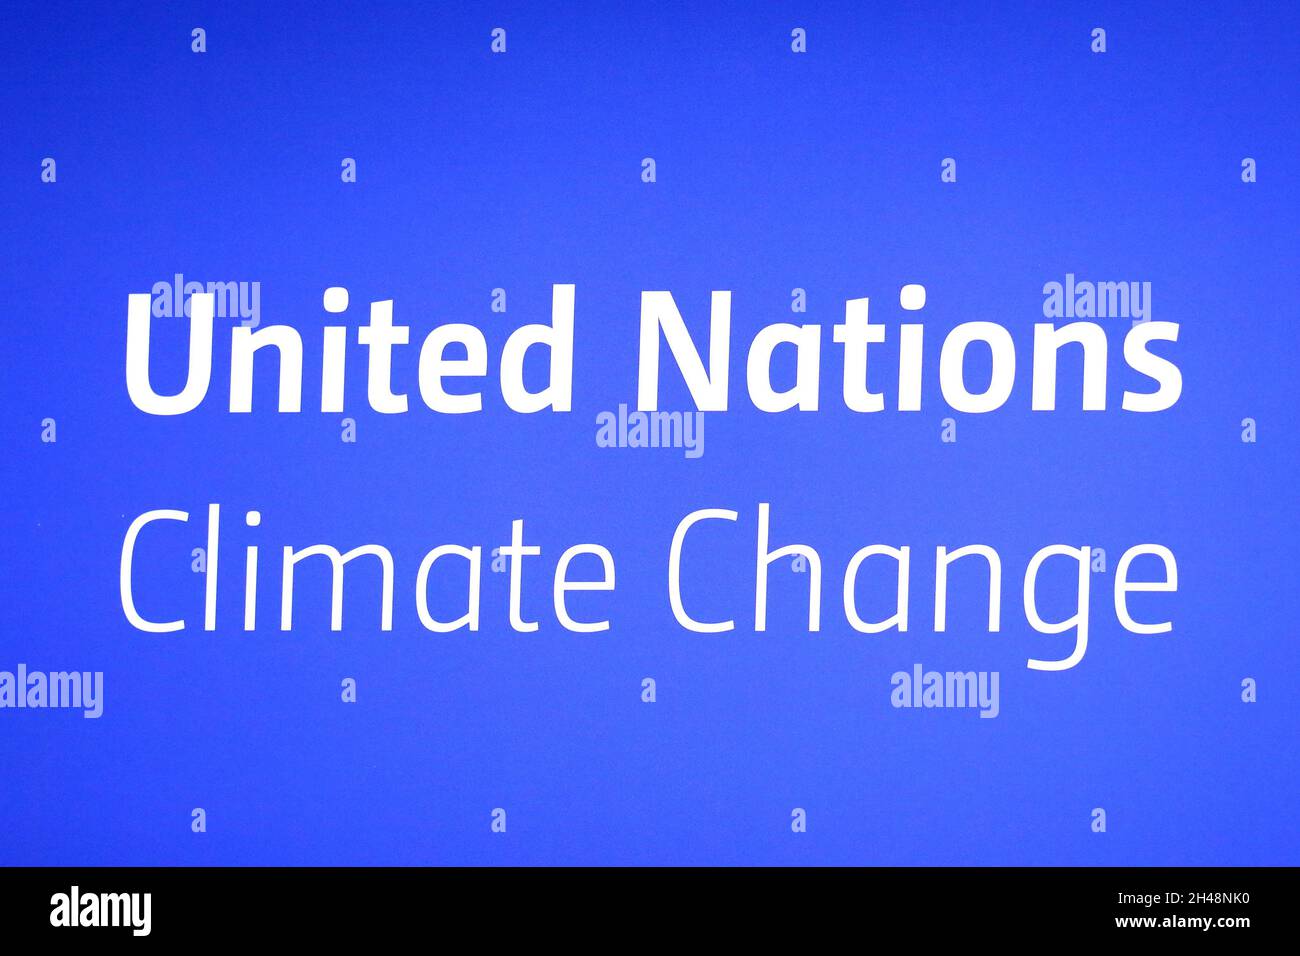 Logo des Nations Unies sur les changements climatiques, 2021 s. Banque D'Images